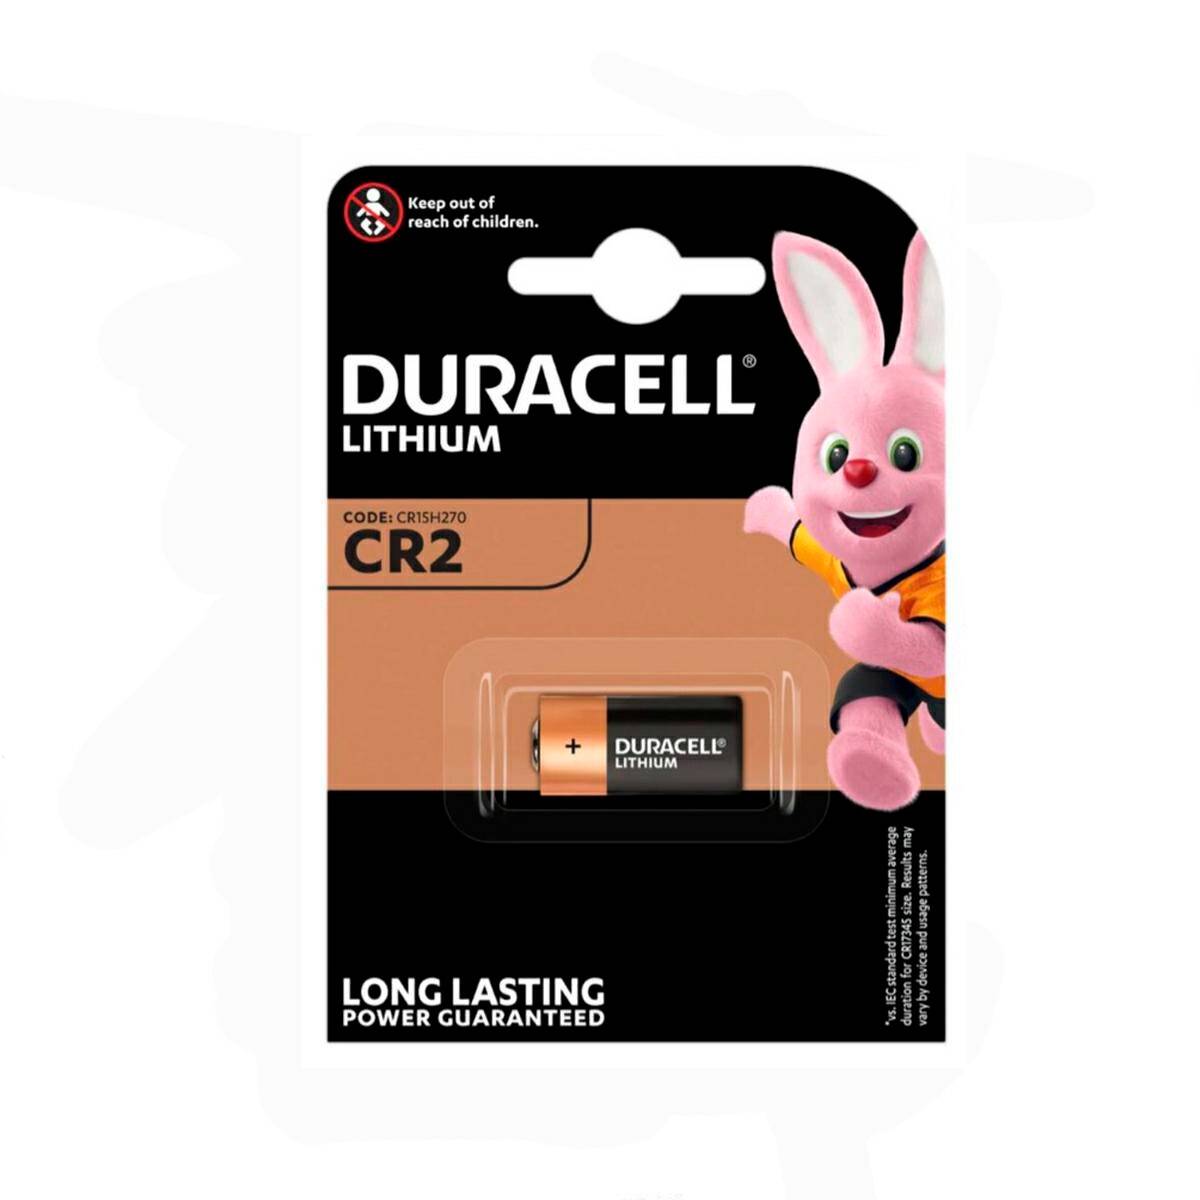 Battery Duracell CR2 CR15H270 3V 1 pcs